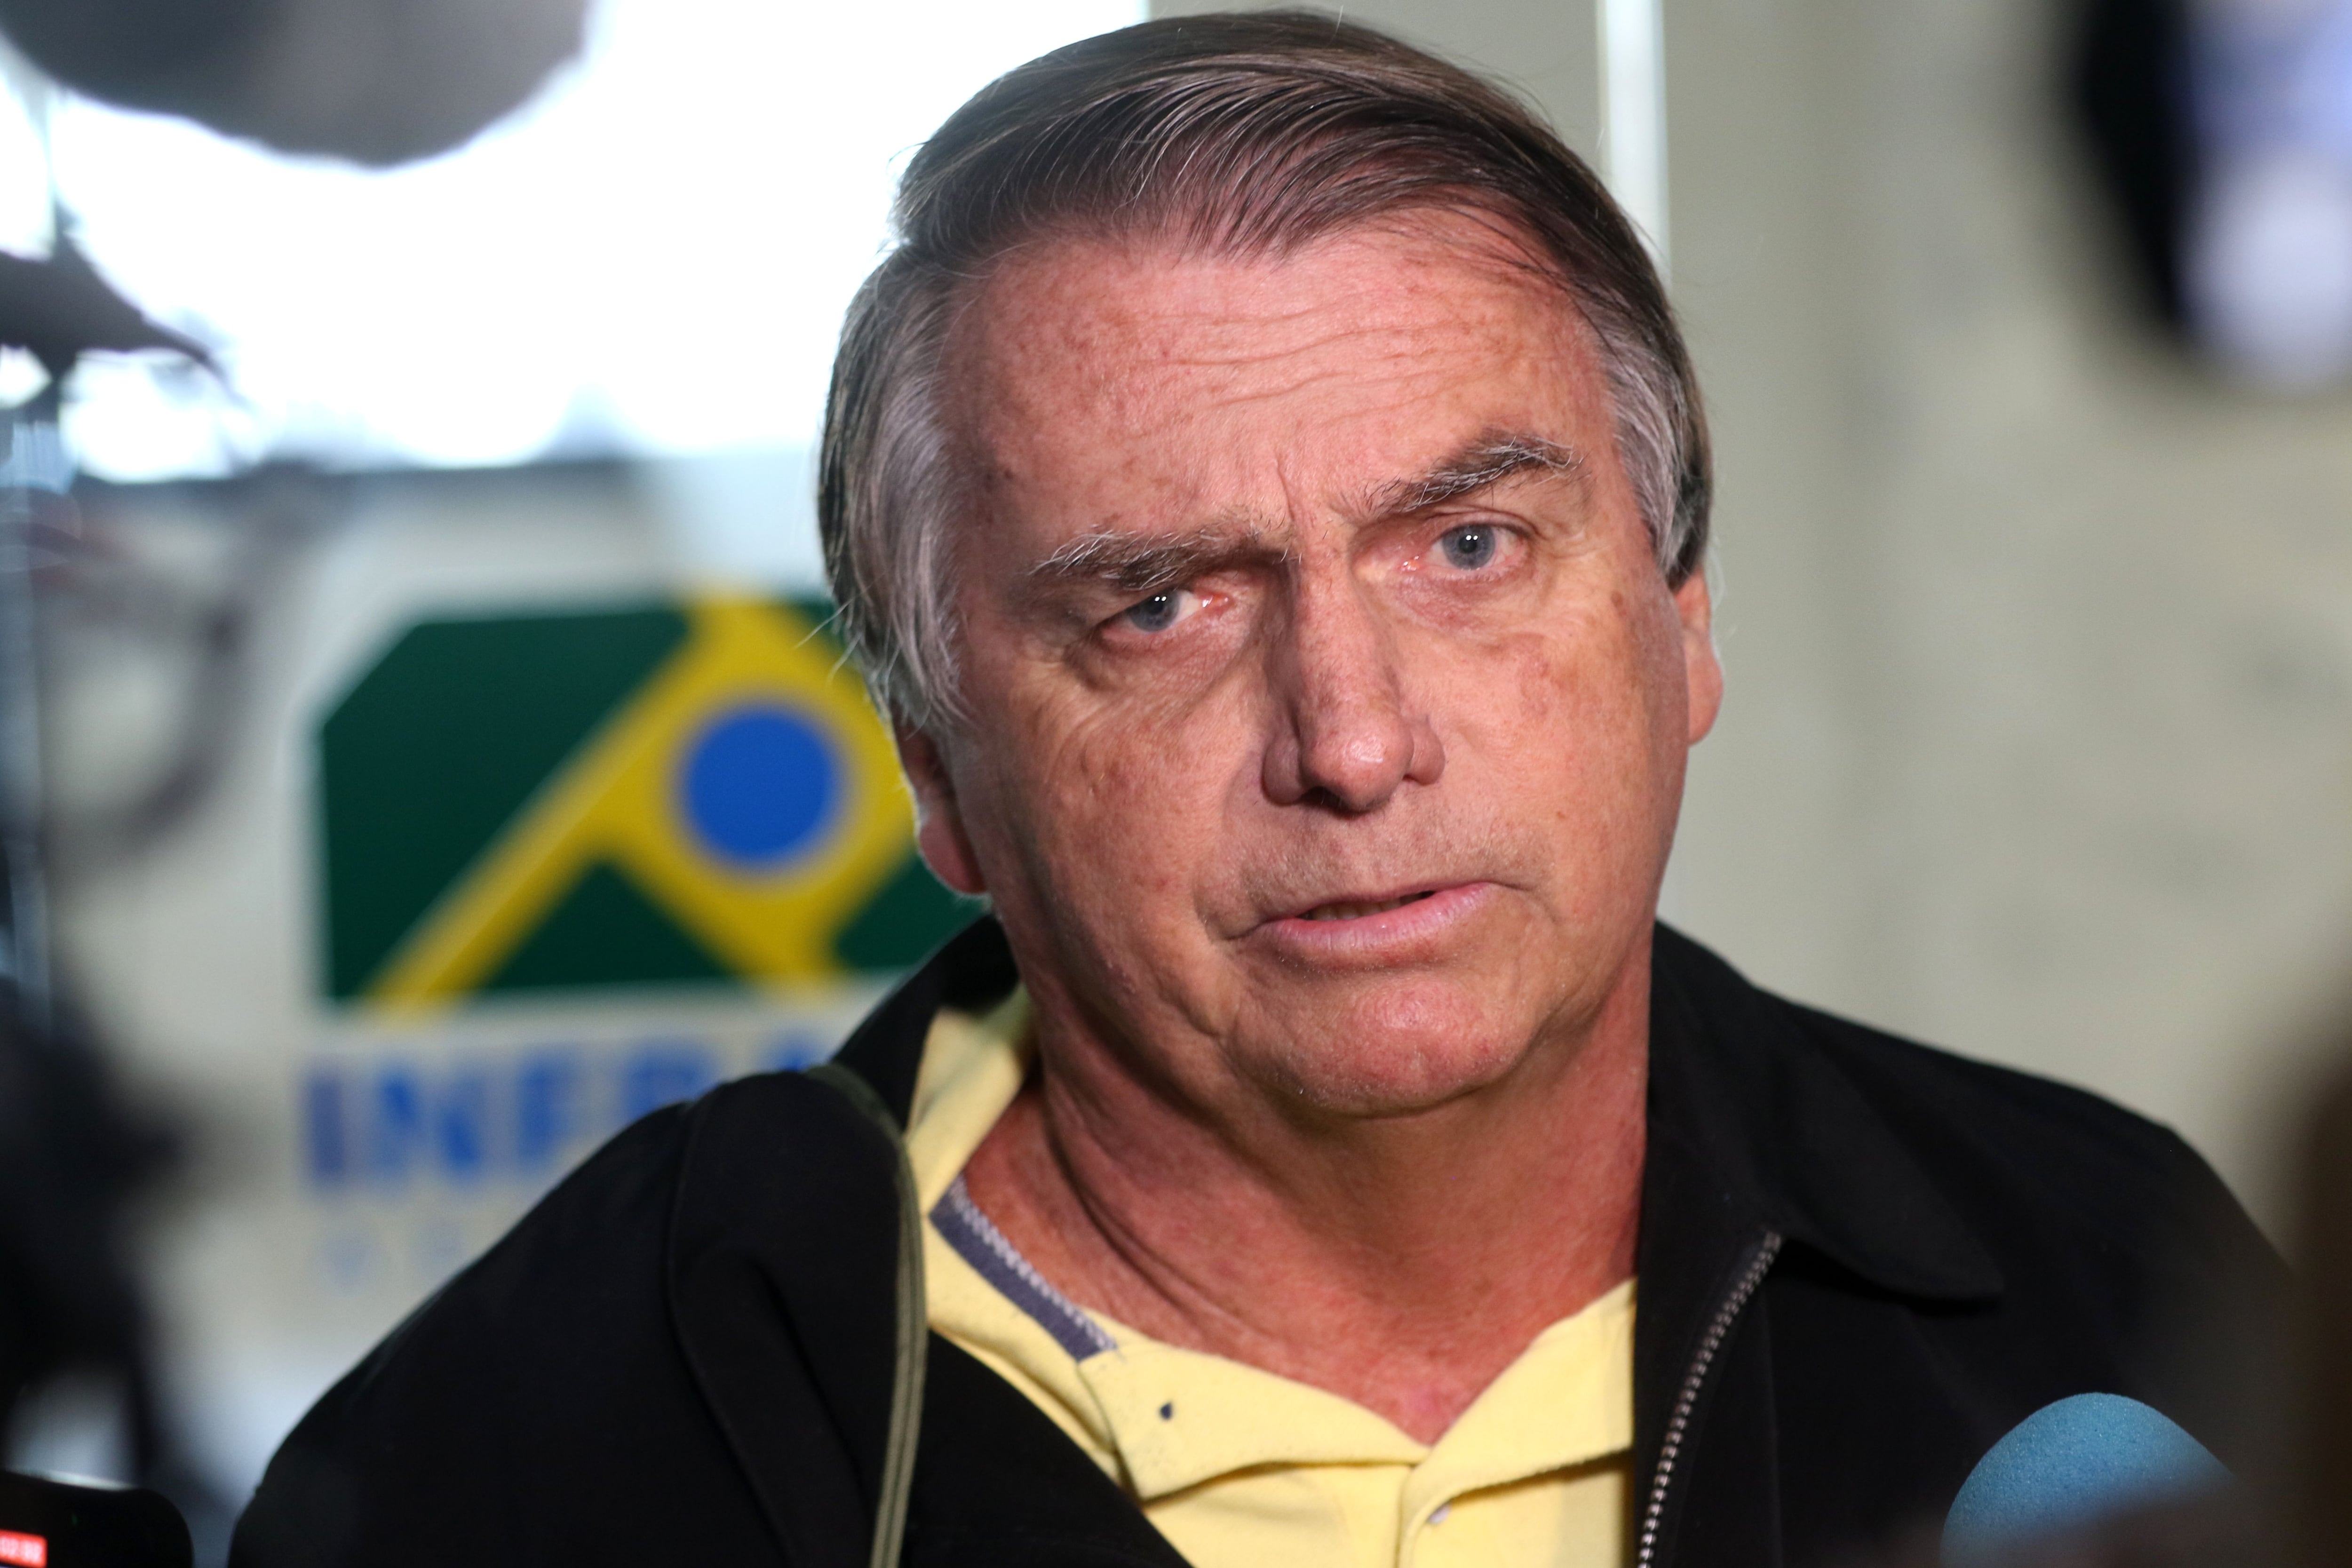 Jair Bolsonaro fue inhabilitado y no podrá presentarse a elecciones hasta 2030 (Tania Regio/Agencia Brazil/Dpa)
